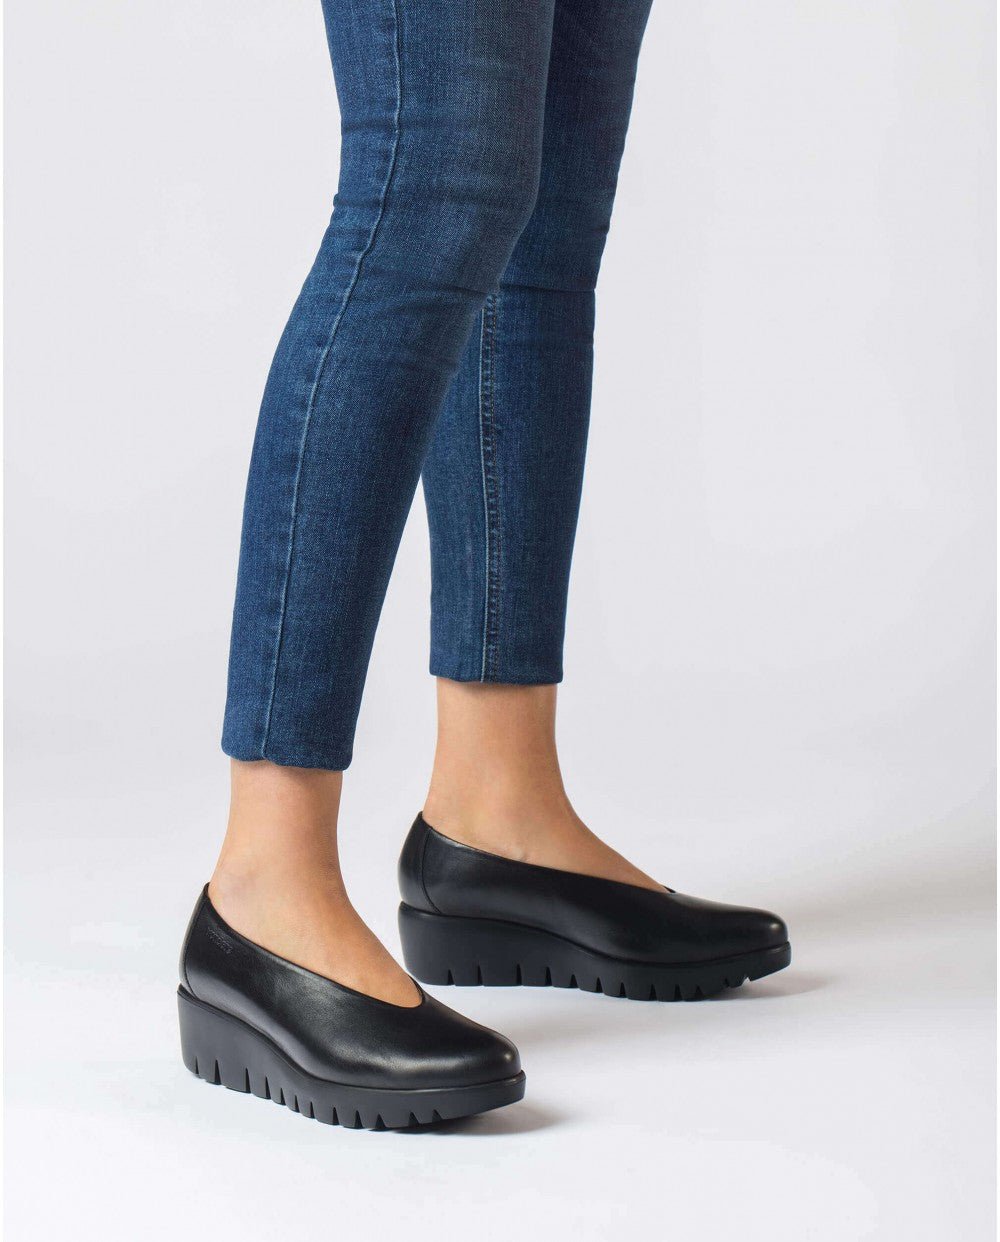 'Fly' women's loafer - Chaplinshoes'Fly' women's loaferWonders